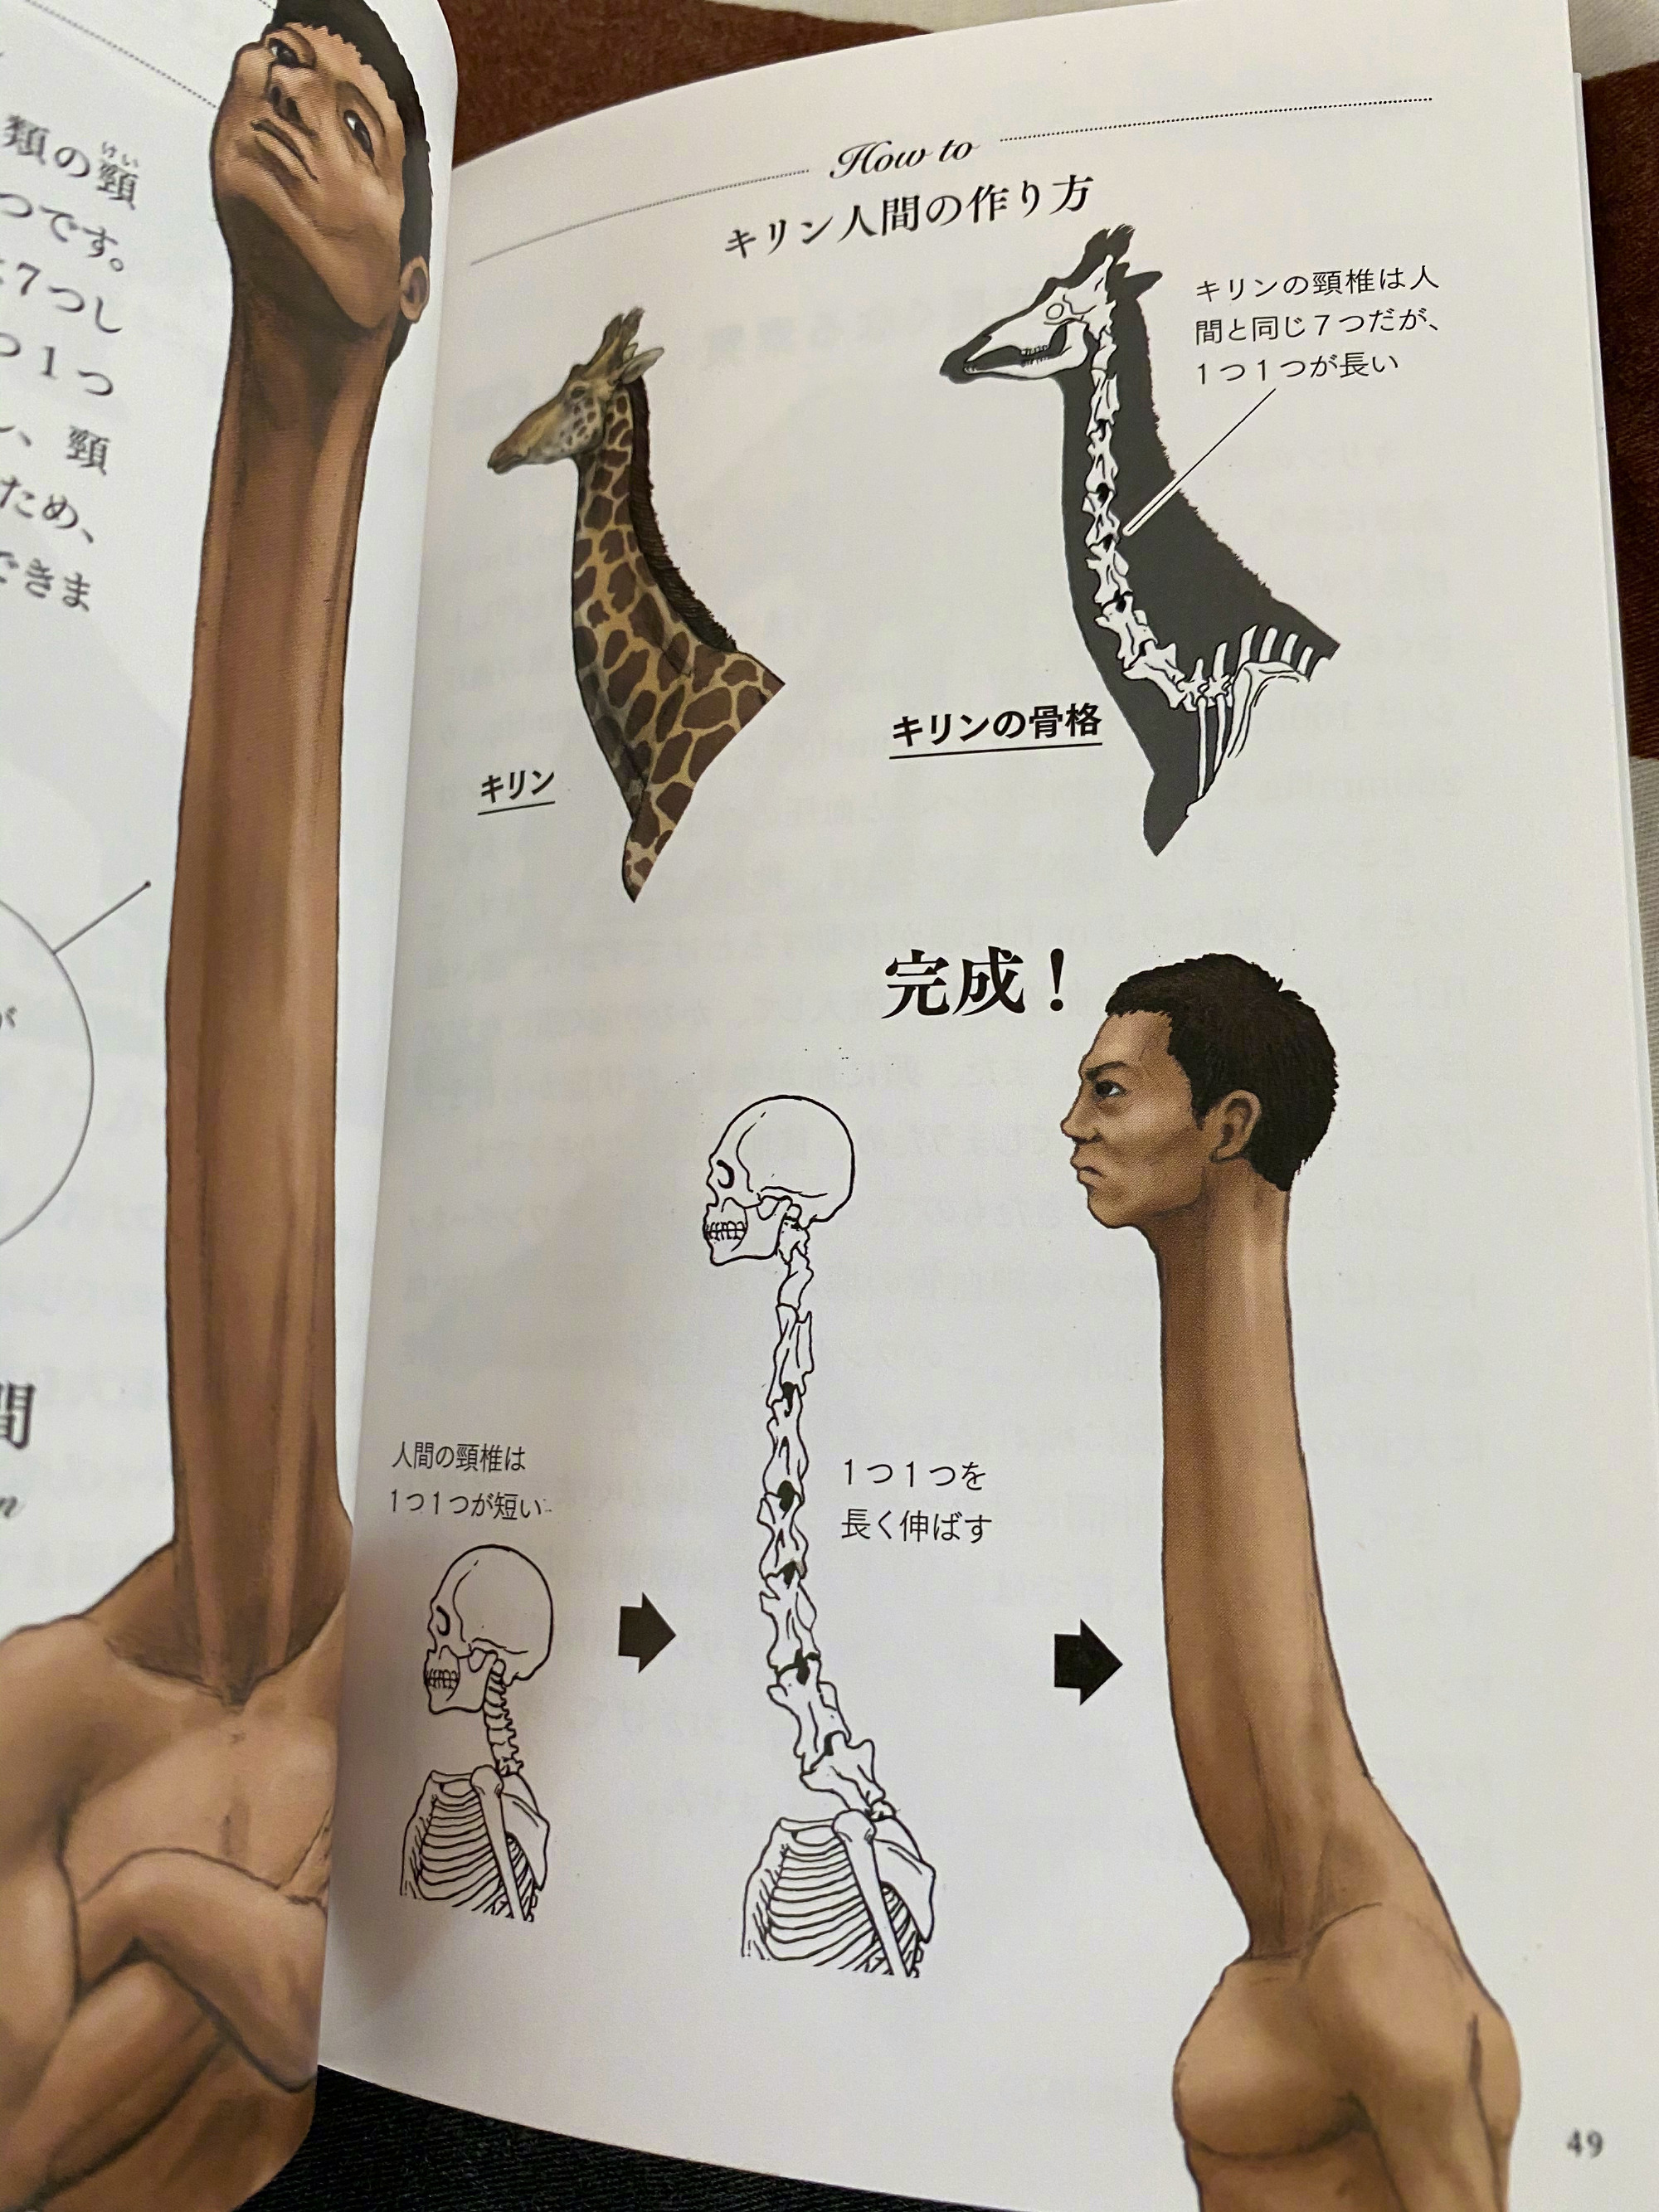 古生物画师川崎悟司的奇葩科普图鉴。